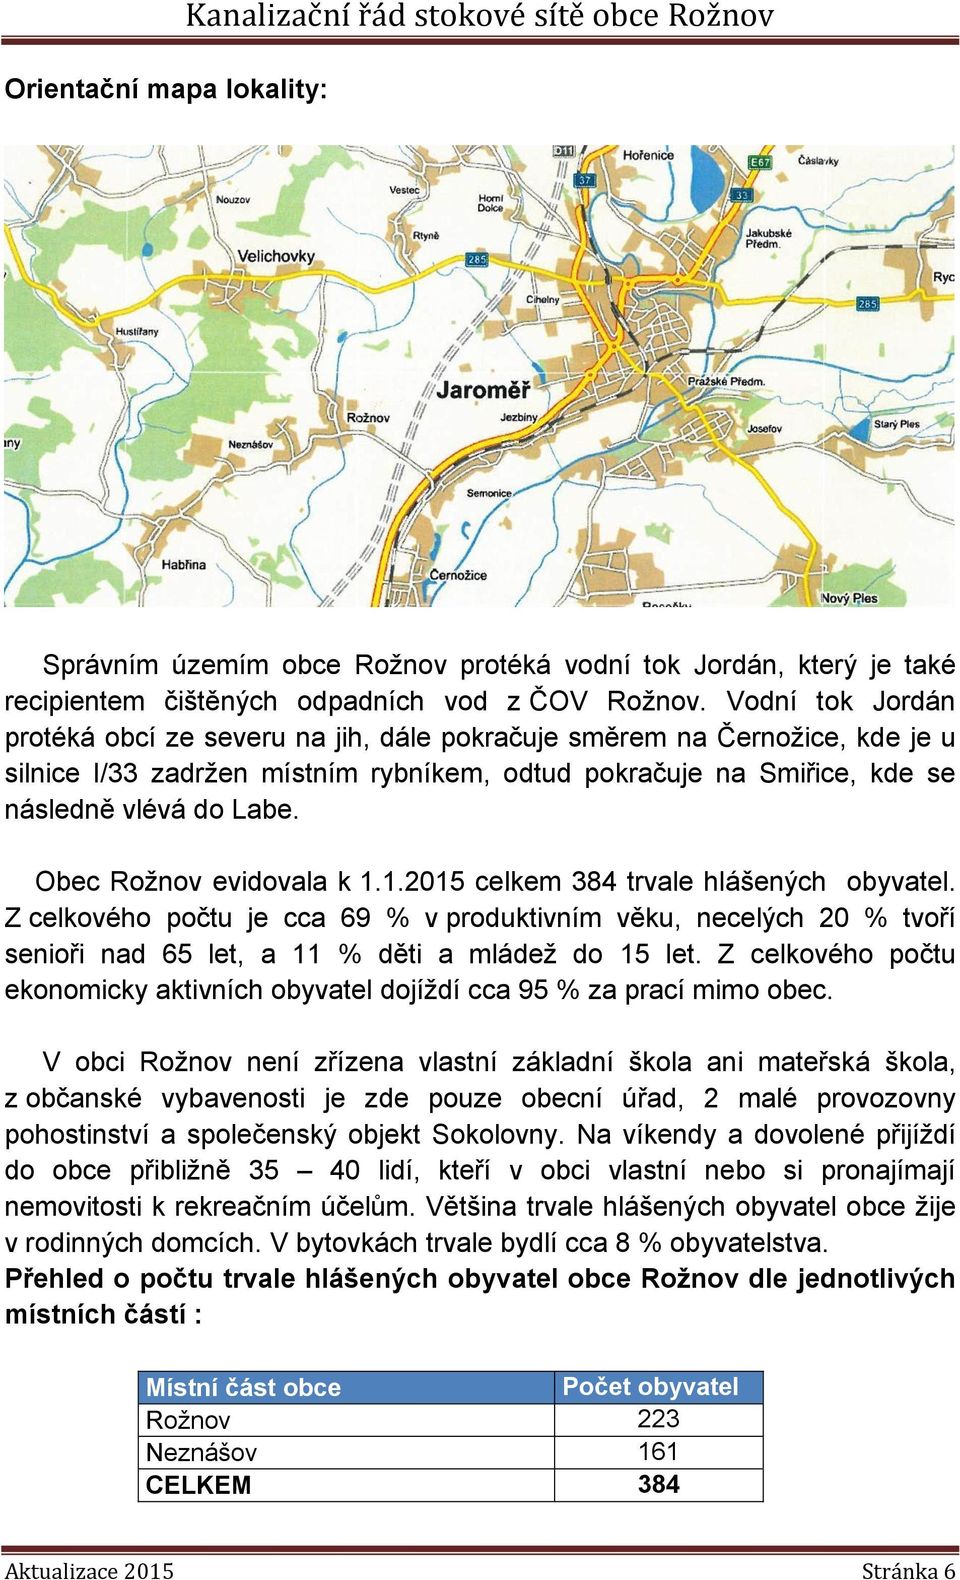 Obec Rožnov evidovala k 1.1.2015 celkem 384 trvale hlášených obyvatel. Z celkového počtu je cca 69 % v produktivním věku, necelých 20 % tvoří senioři nad 65 let, a 11 % děti a mládež do 15 let.